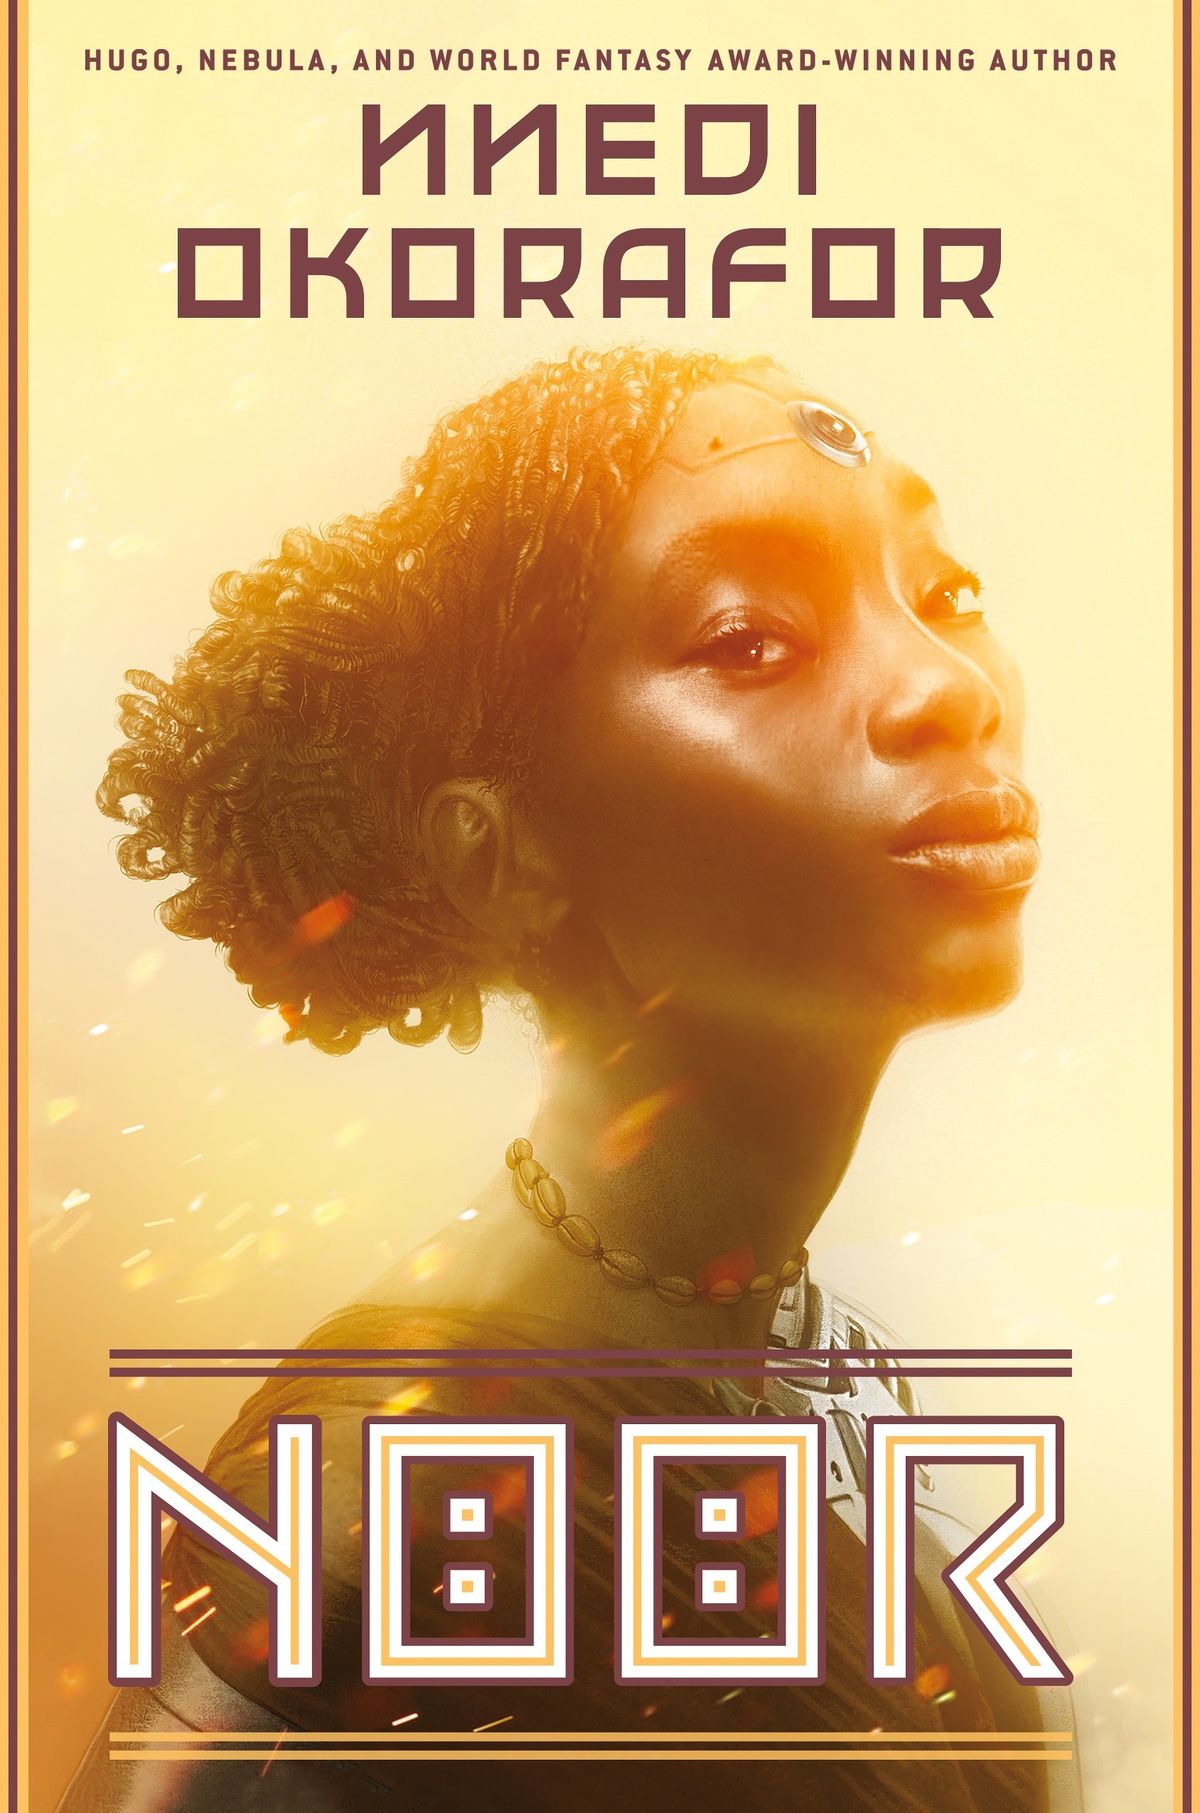 Nnedi Okorafors „Noor“ verspricht Cyborgs, afrikanischen Futurismus und jede Menge Abenteuer